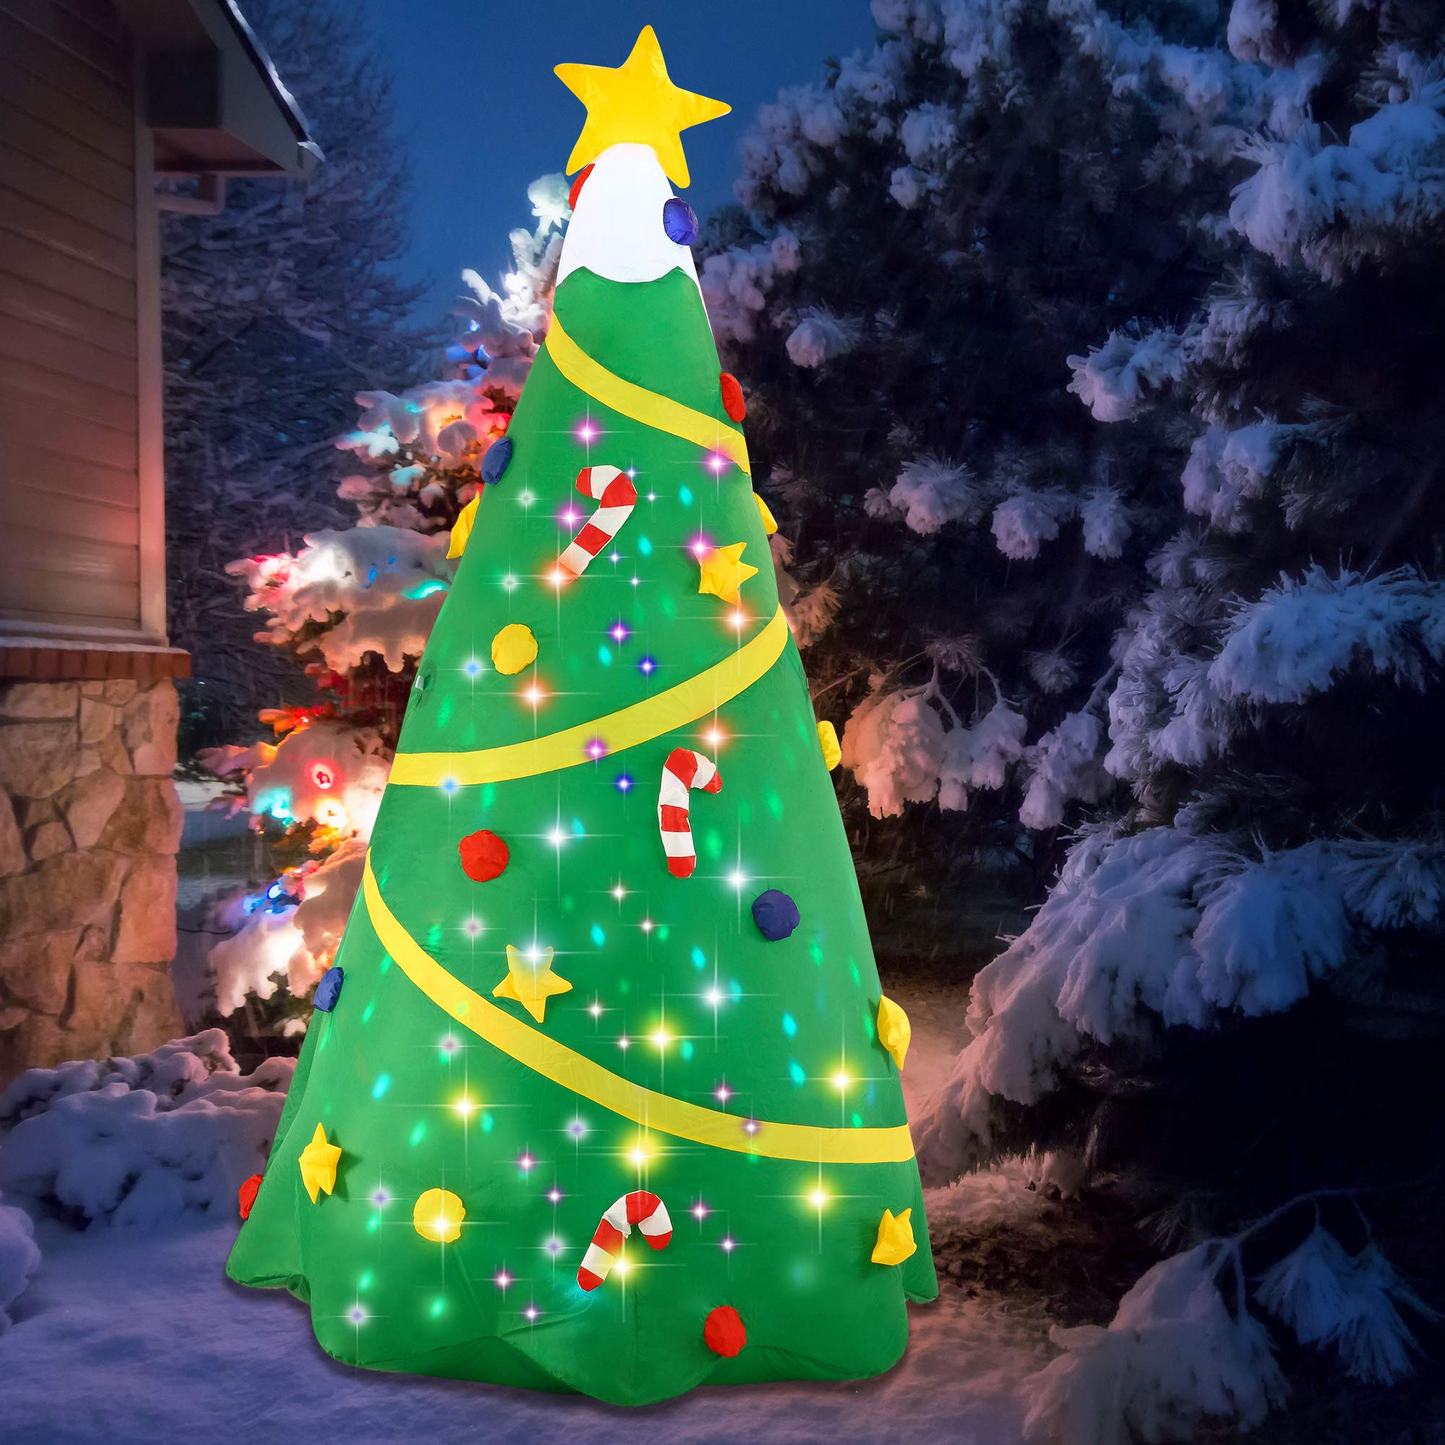 Jumbo Christmas Tree with Lights Inflatable (8 ft)